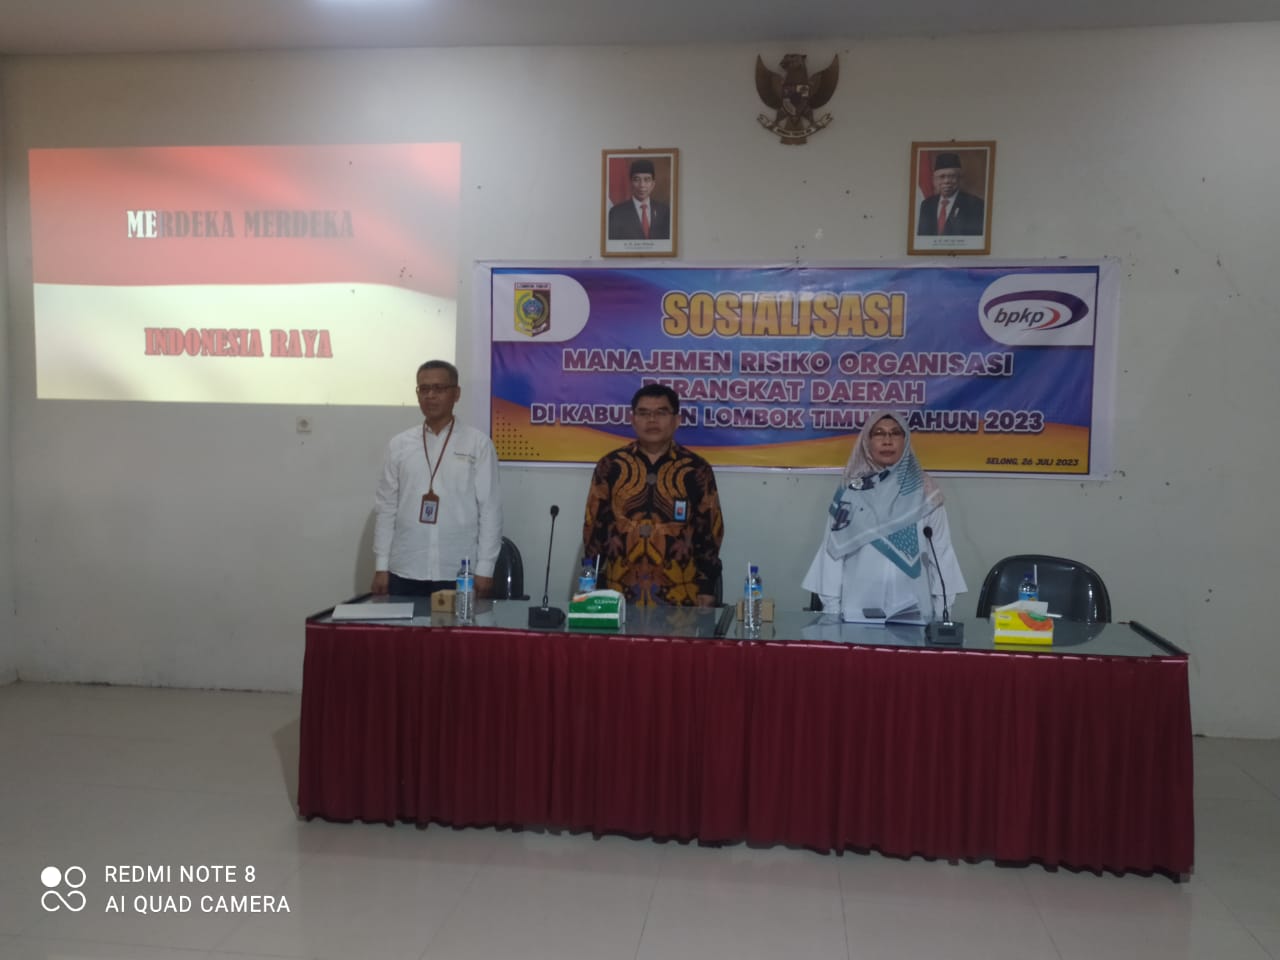 Sosialisasi Manajemen Risiko Organisasi Perangkat Daerah di Kabupaten Lombok Timur 2023